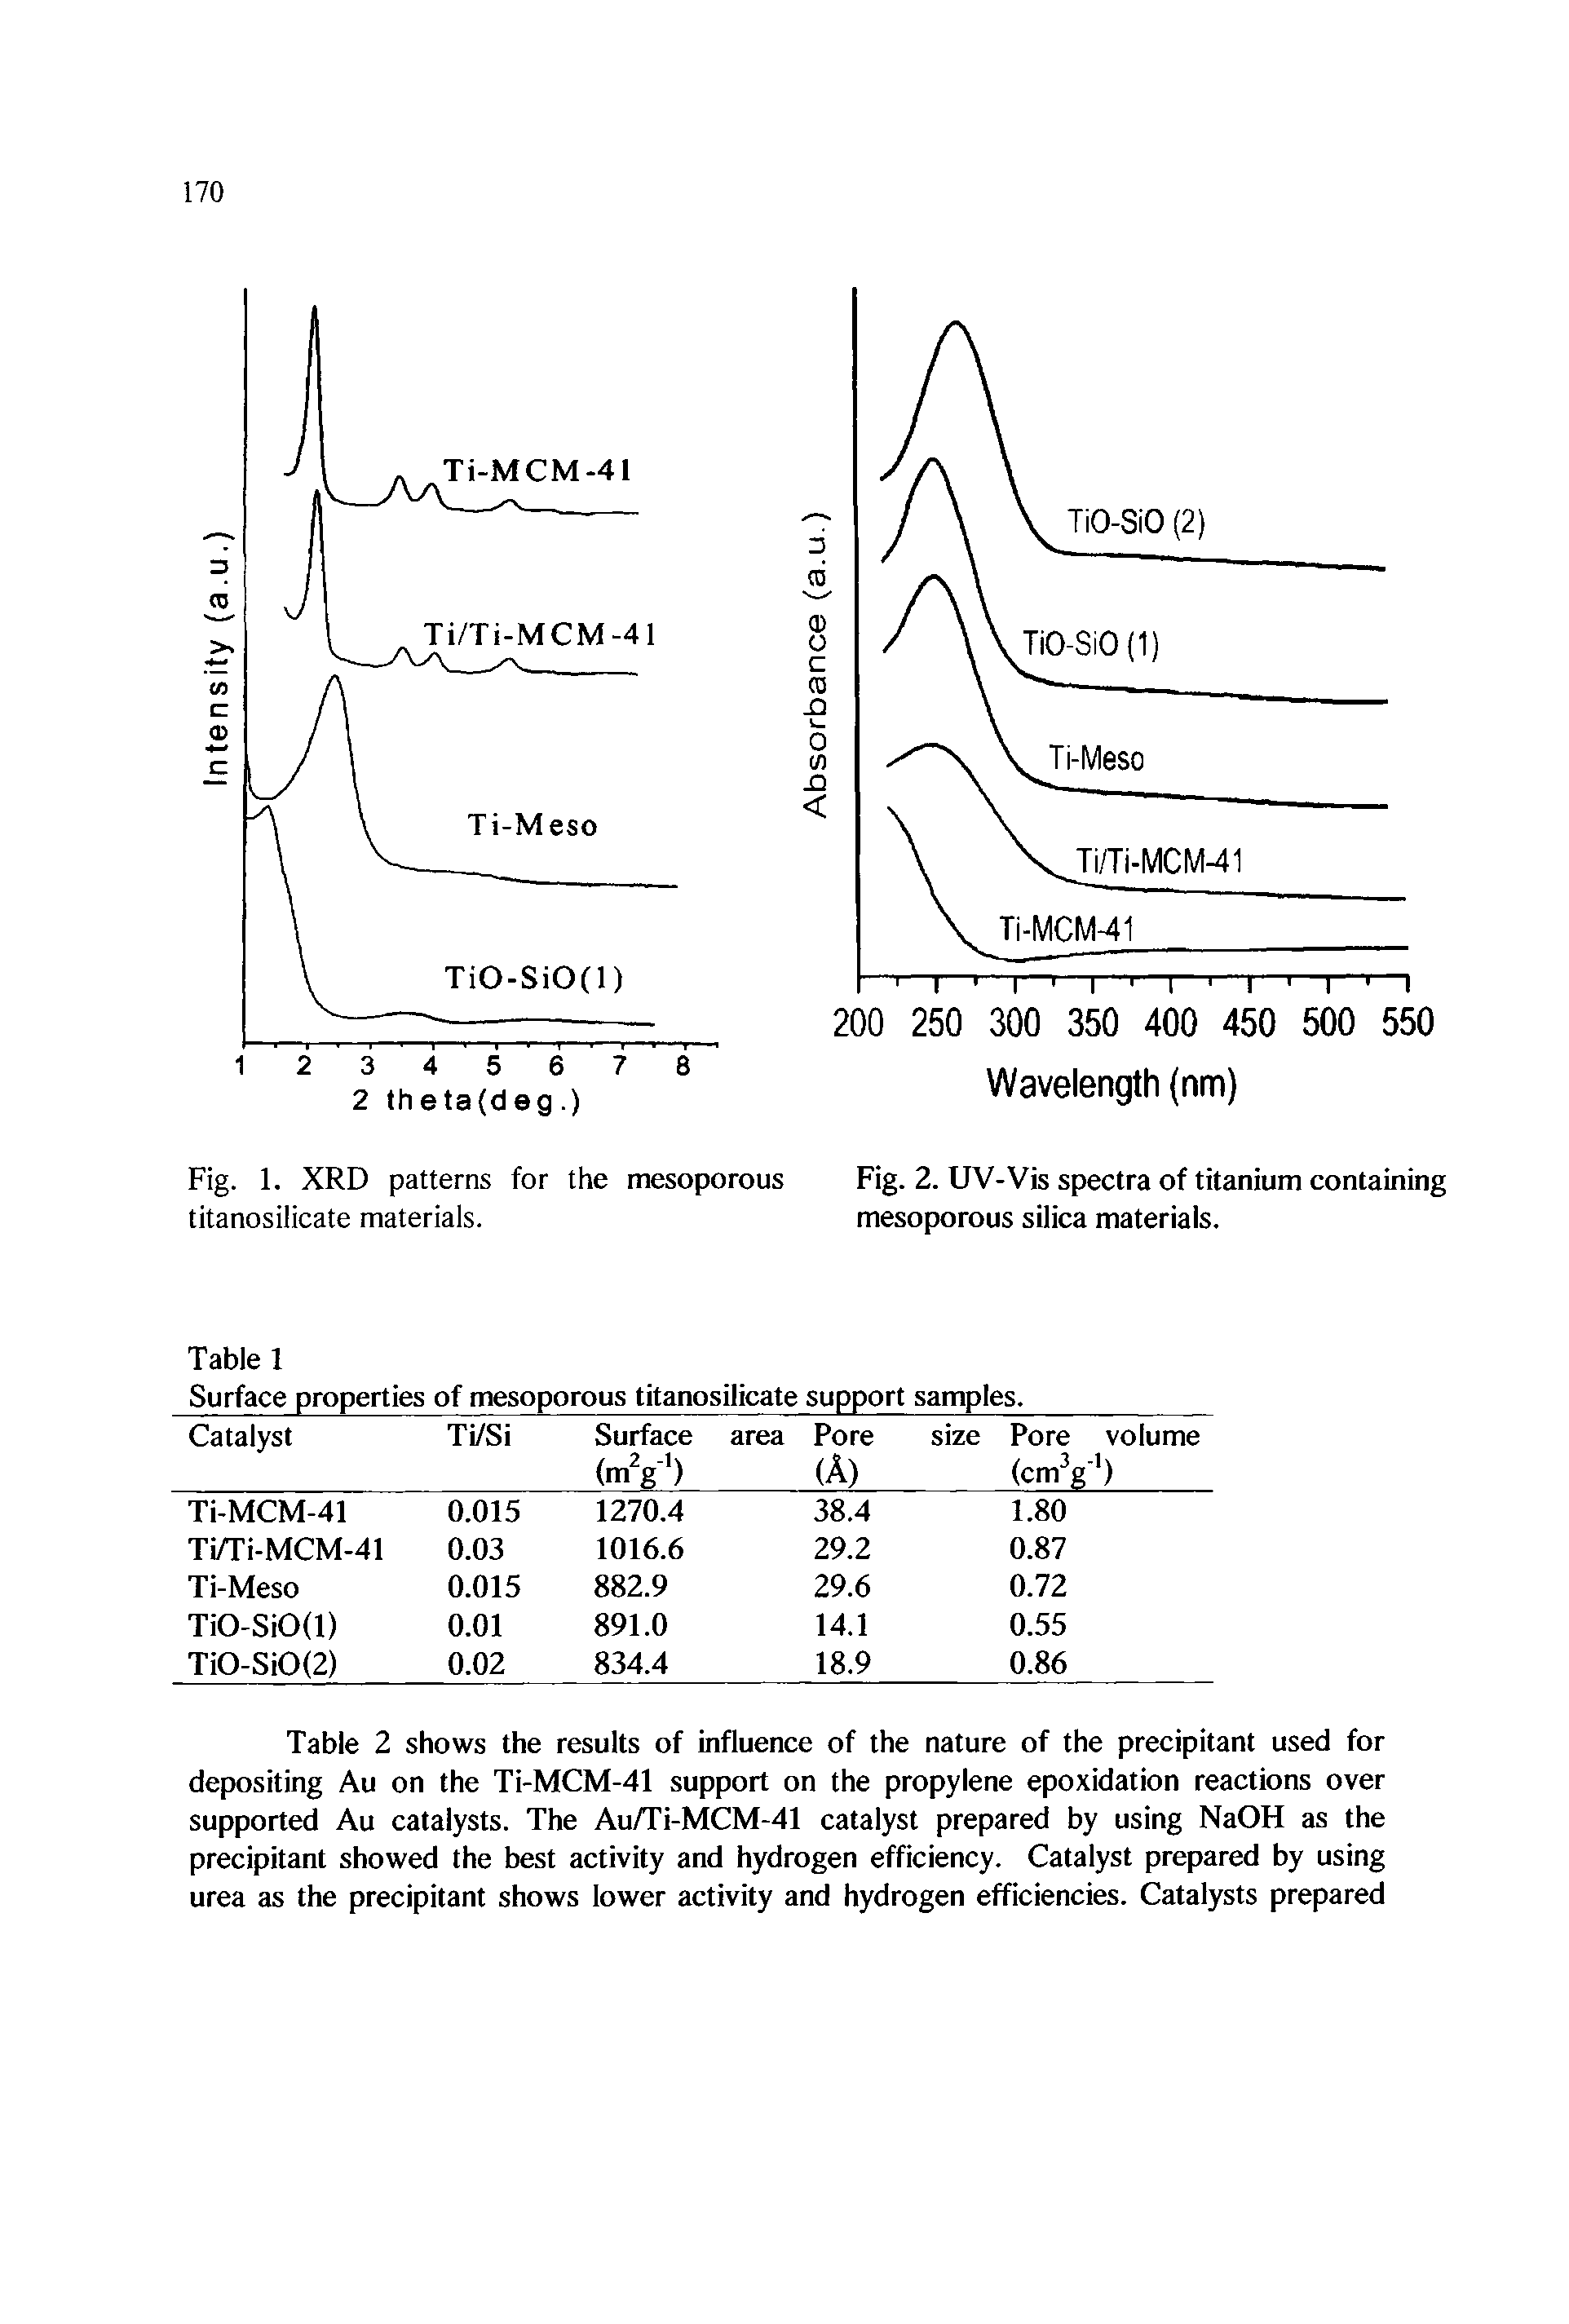 Fig. 2. UV-Vis spectra of titanium containing mesoporous silica materials.